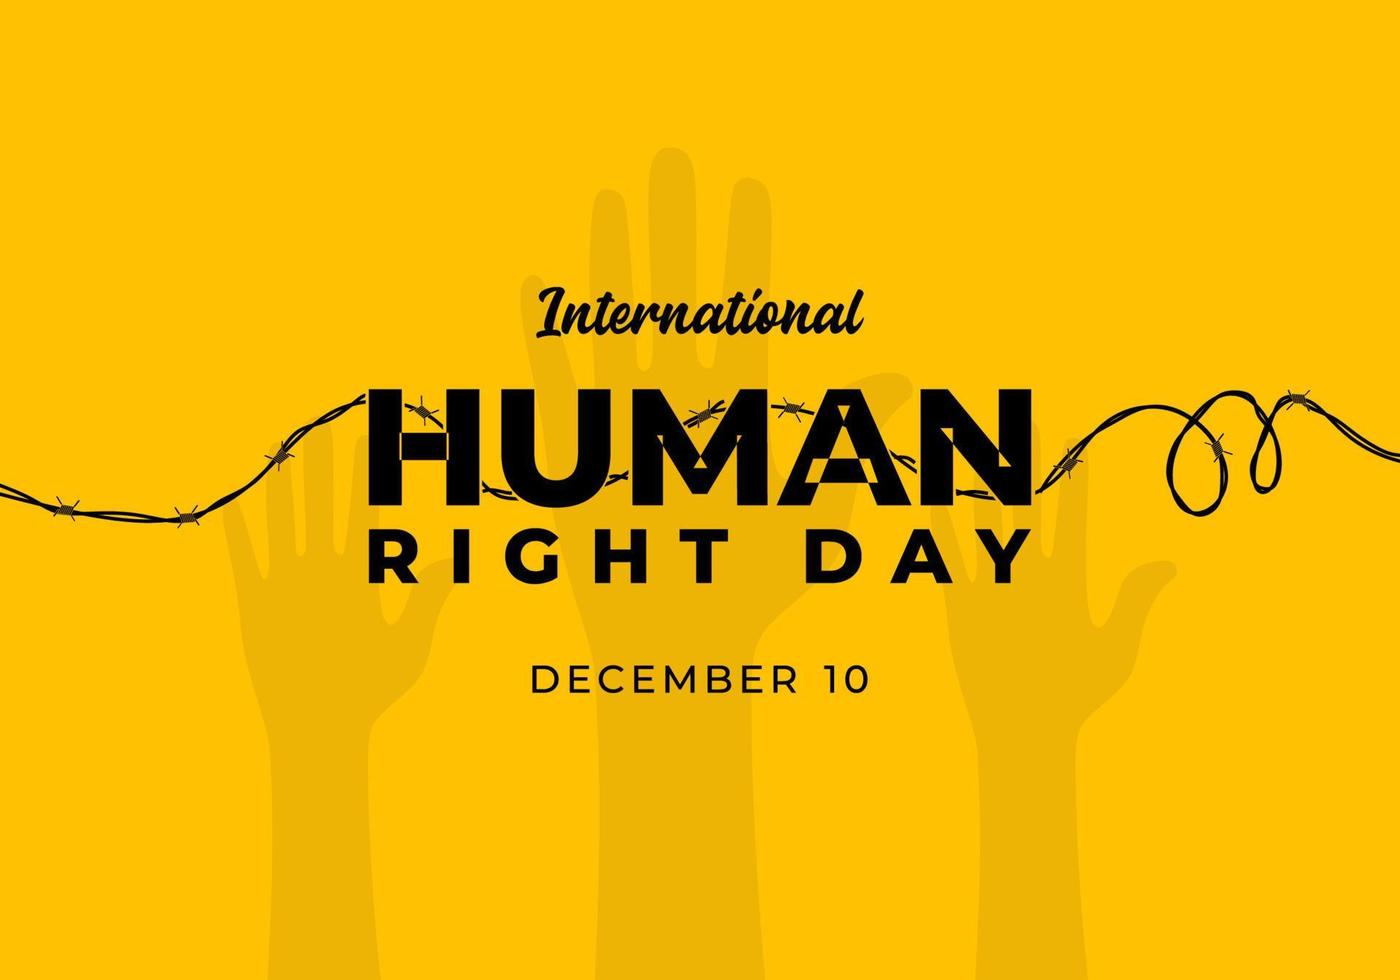 Internationale menselijk Rechtsaf dag achtergrond gevierd Aan december 10. vector